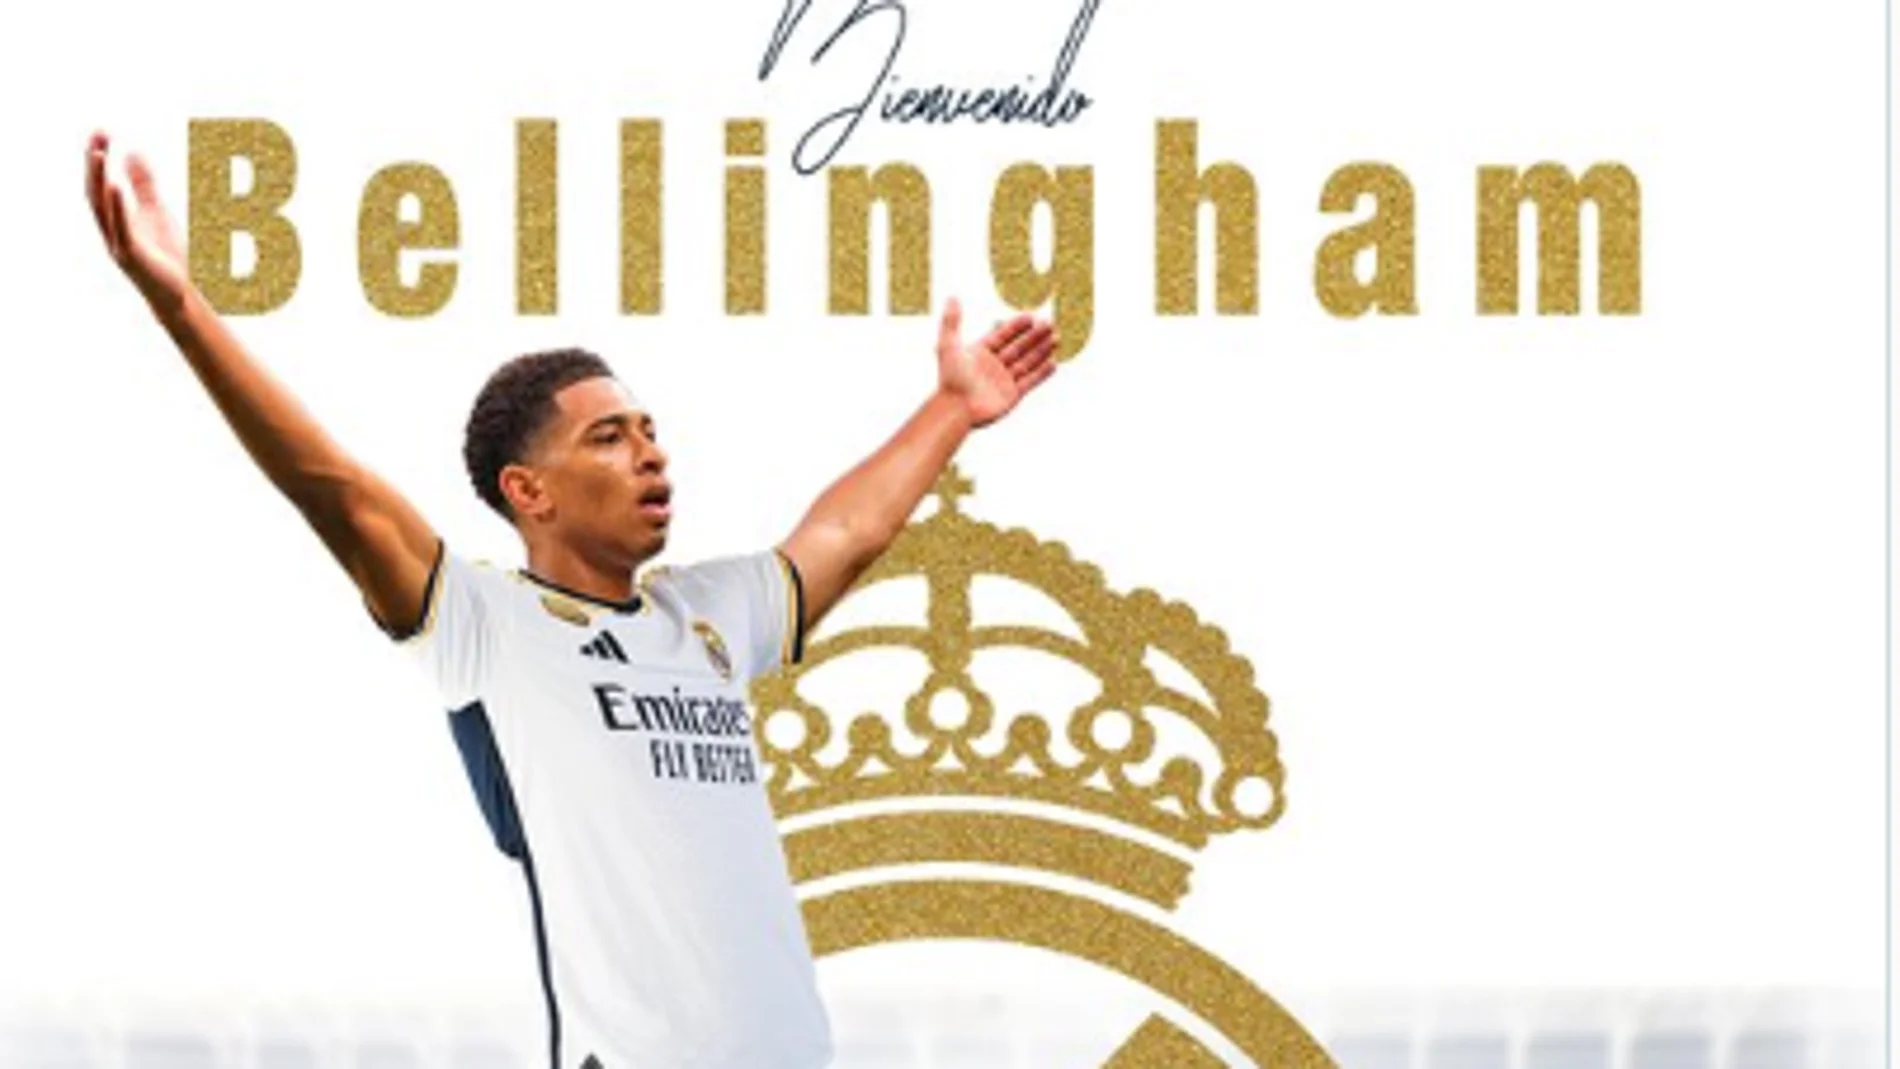 El Real Madrid hace oficial el fichaje de Bellingham